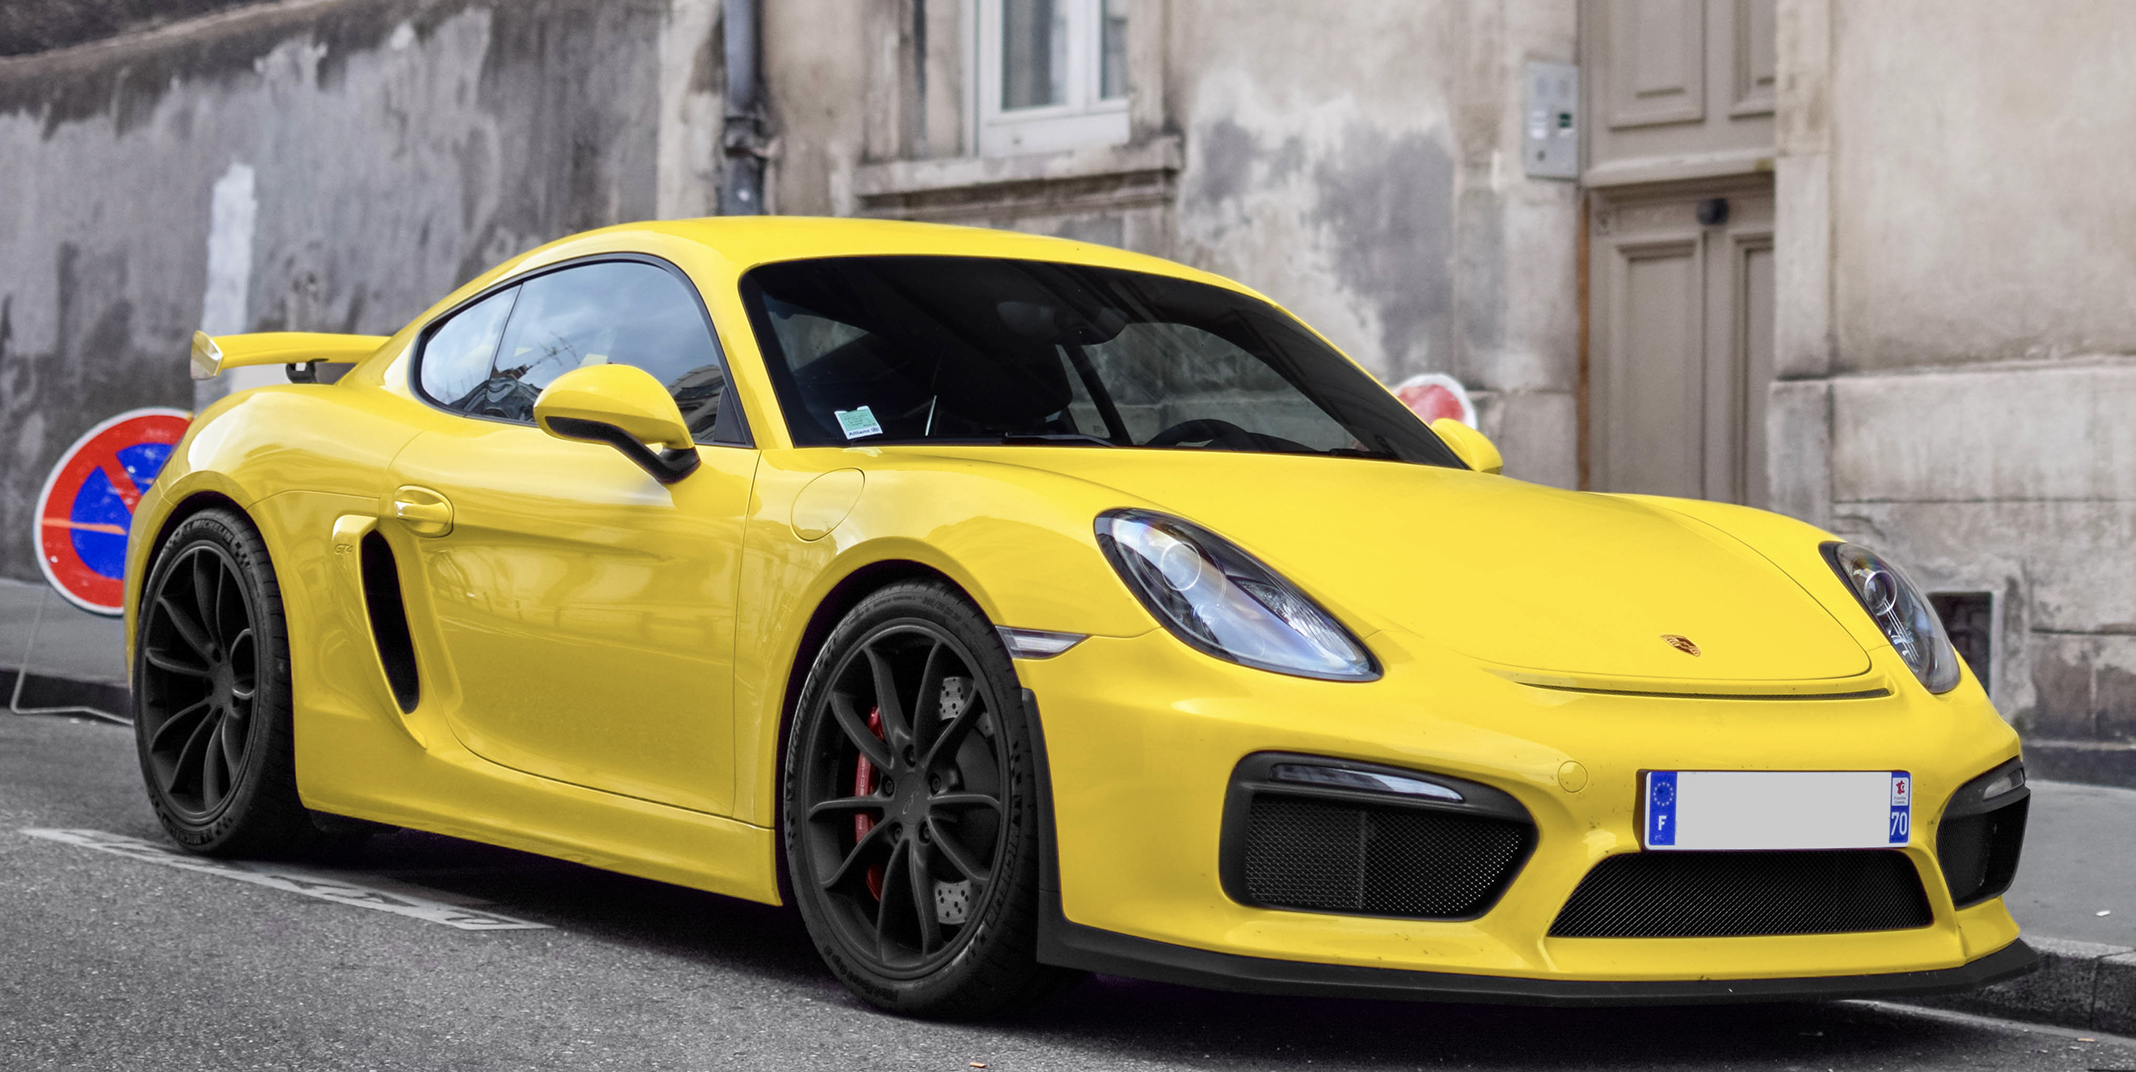 Performance leap in light technology - Porsche Newsroom